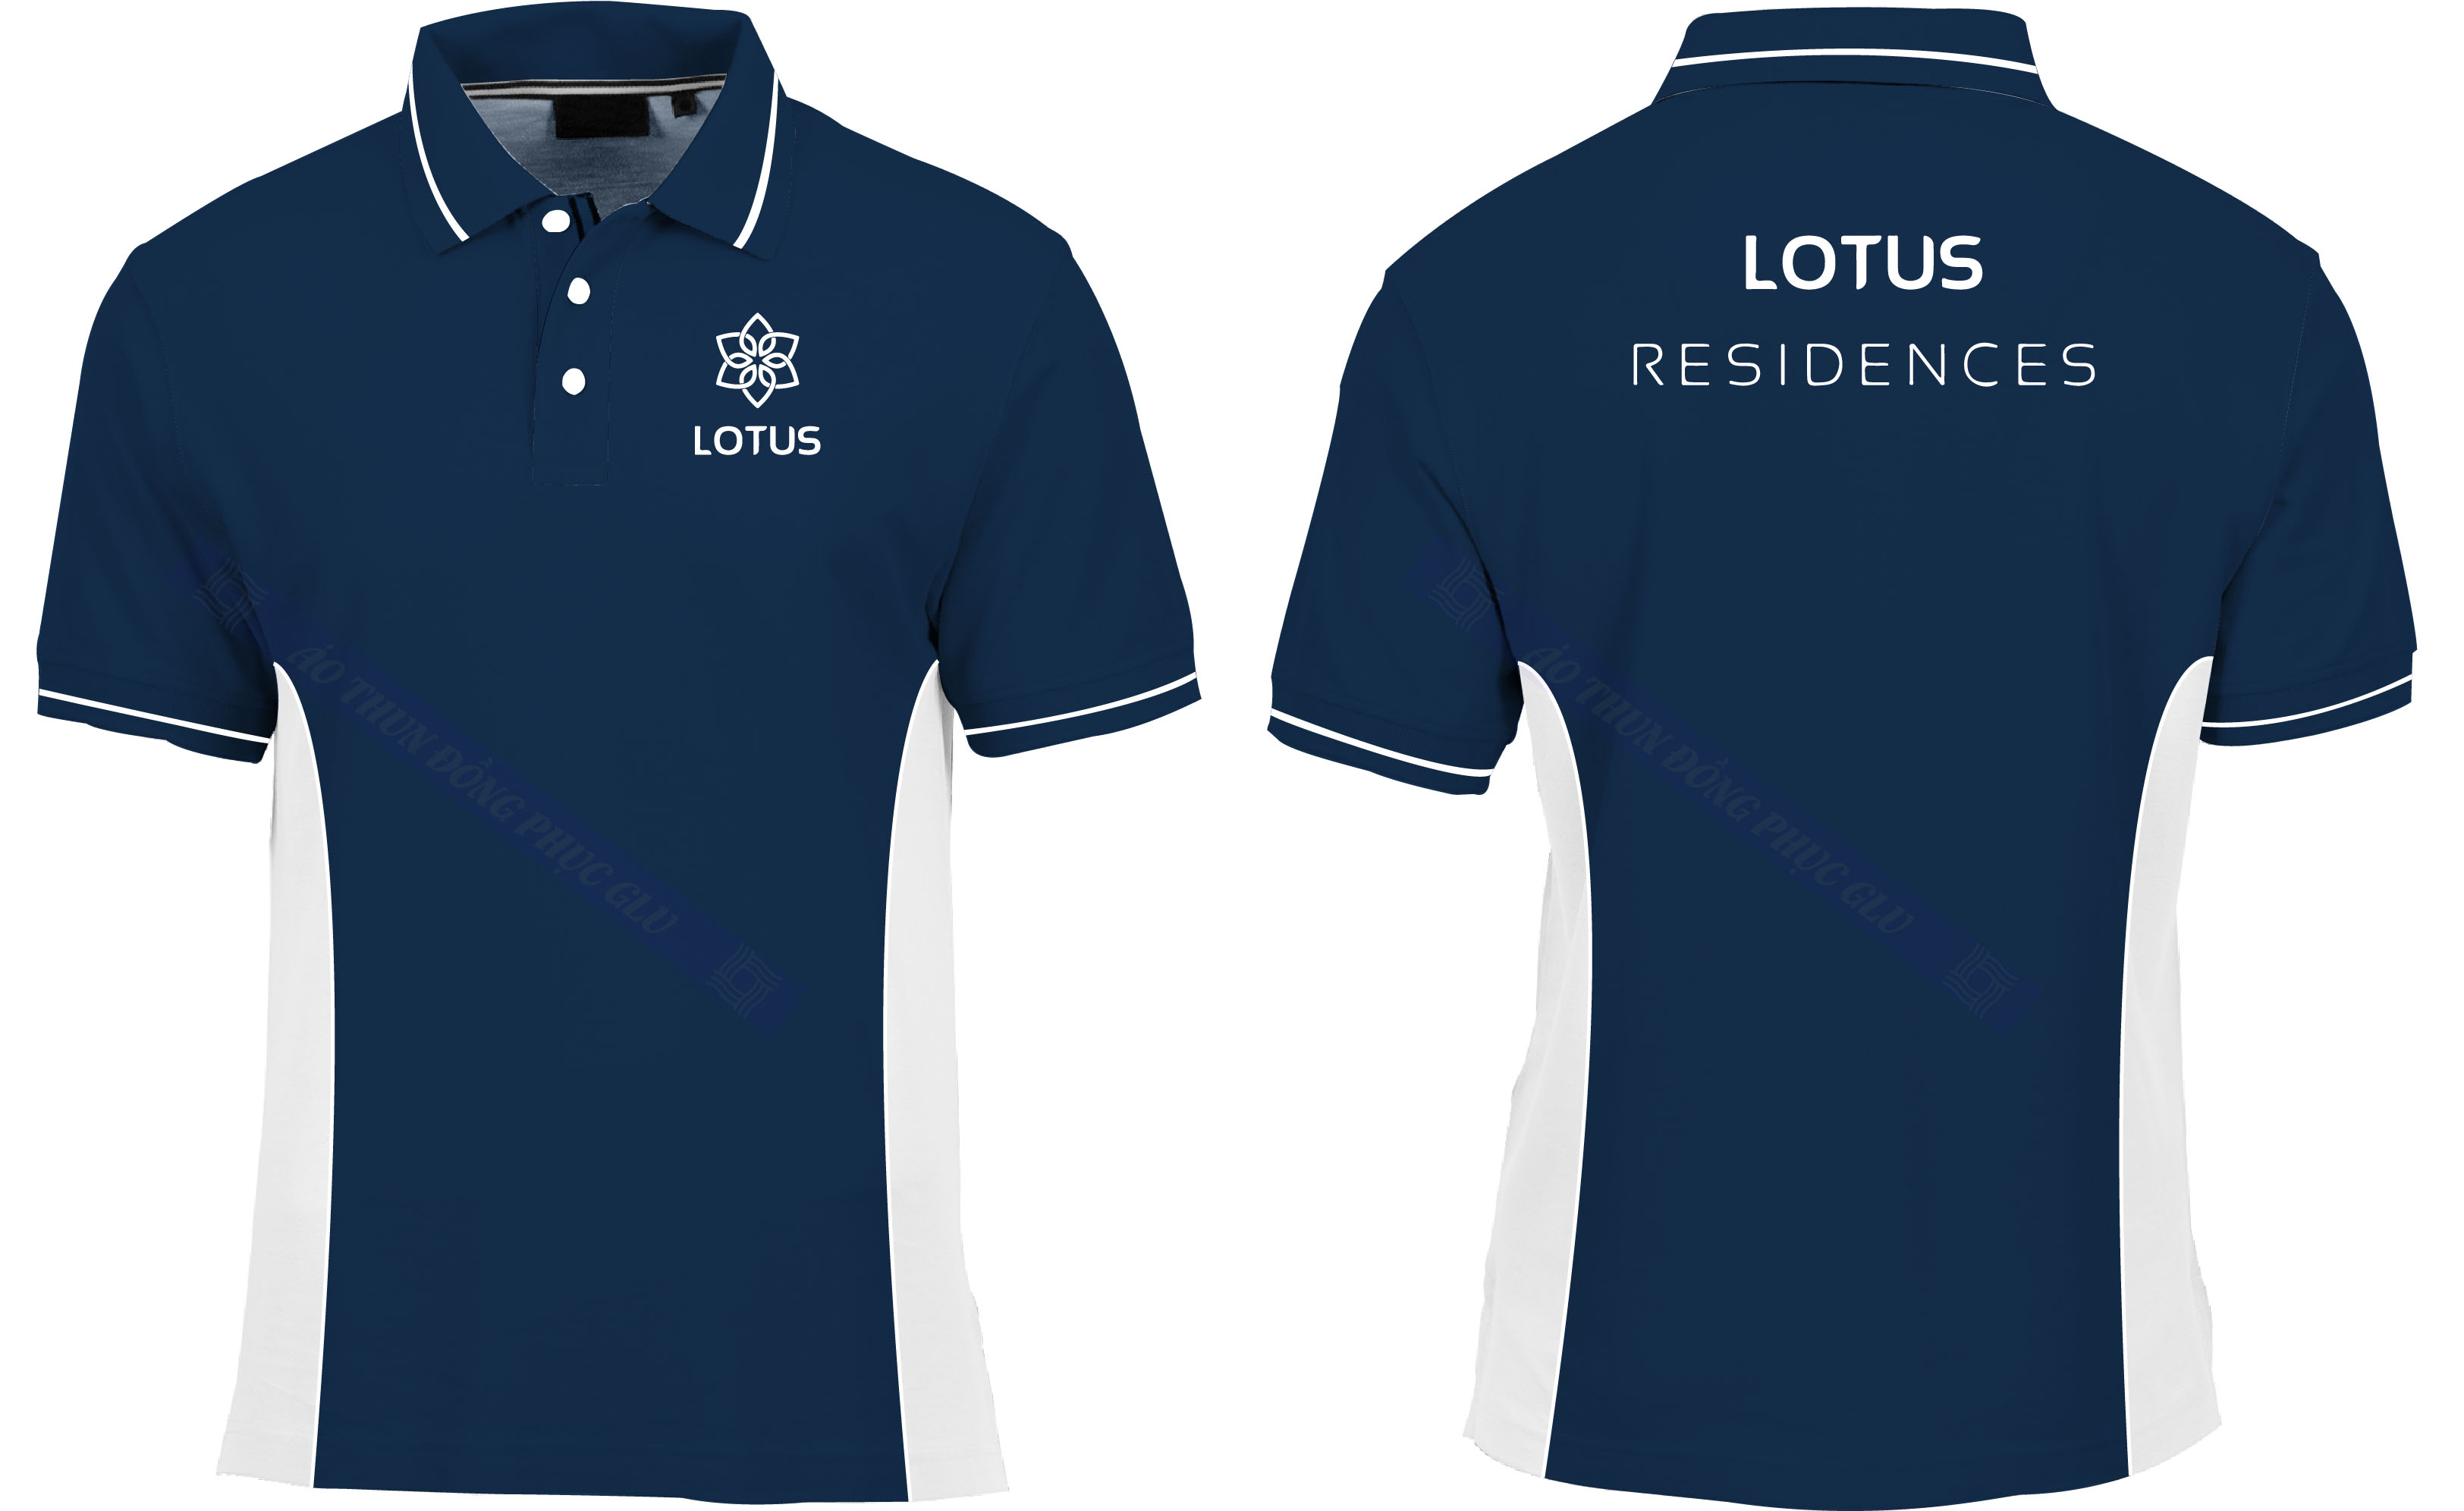 AO THUN LUTUS RESIDENCE Mẫu thiết kế áo đồng phục